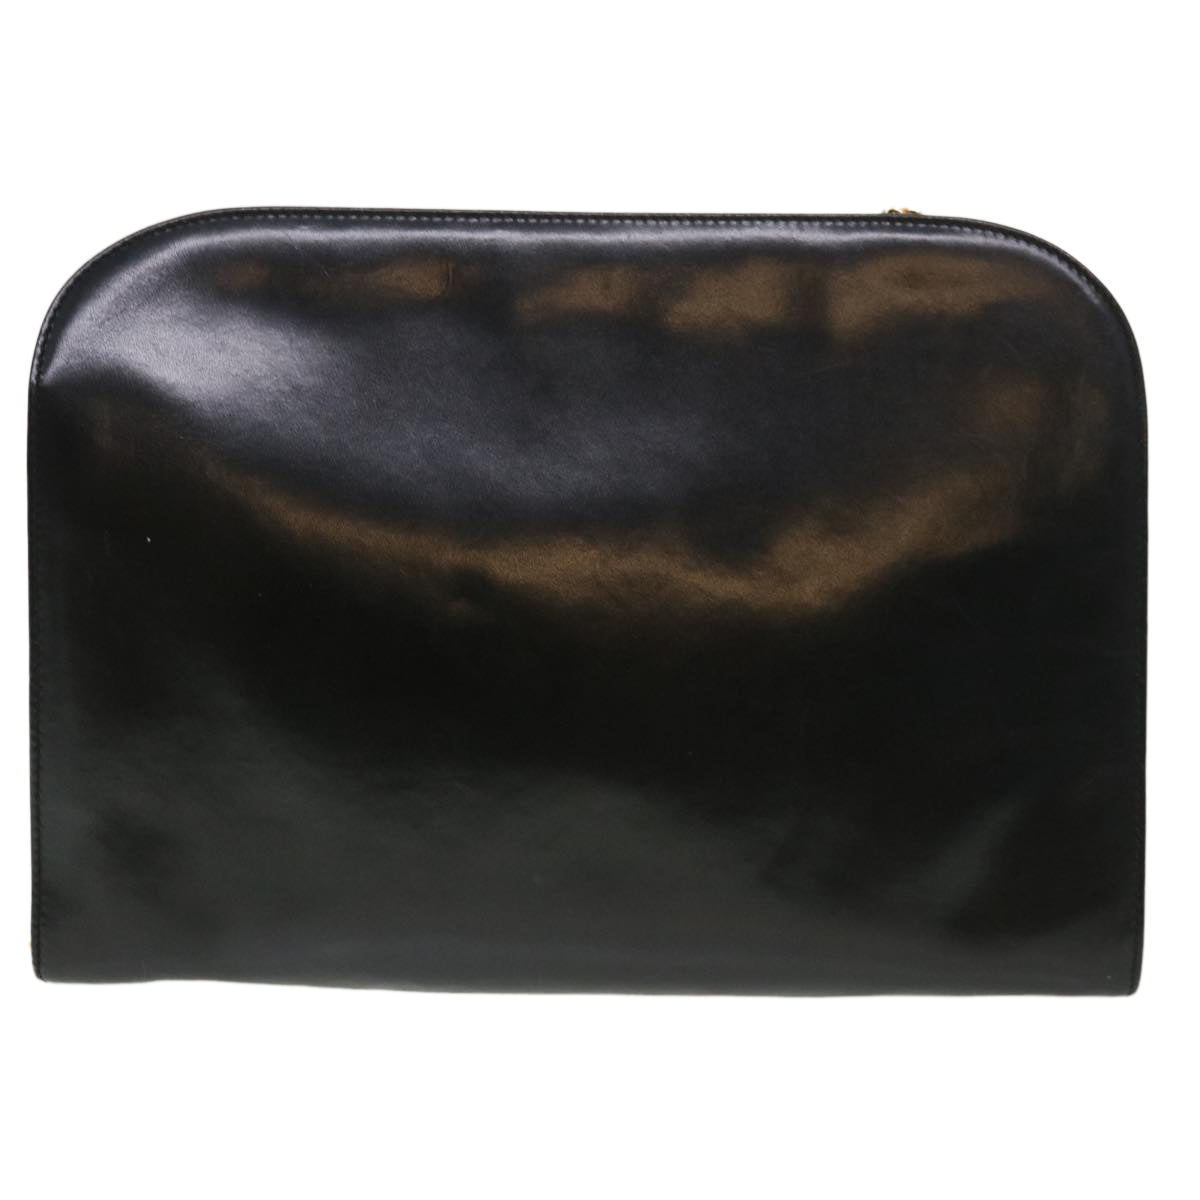 Salvatore Ferragamo Chain Shoulder Bag Leather Black P 21 0587 Auth cl459 - 0